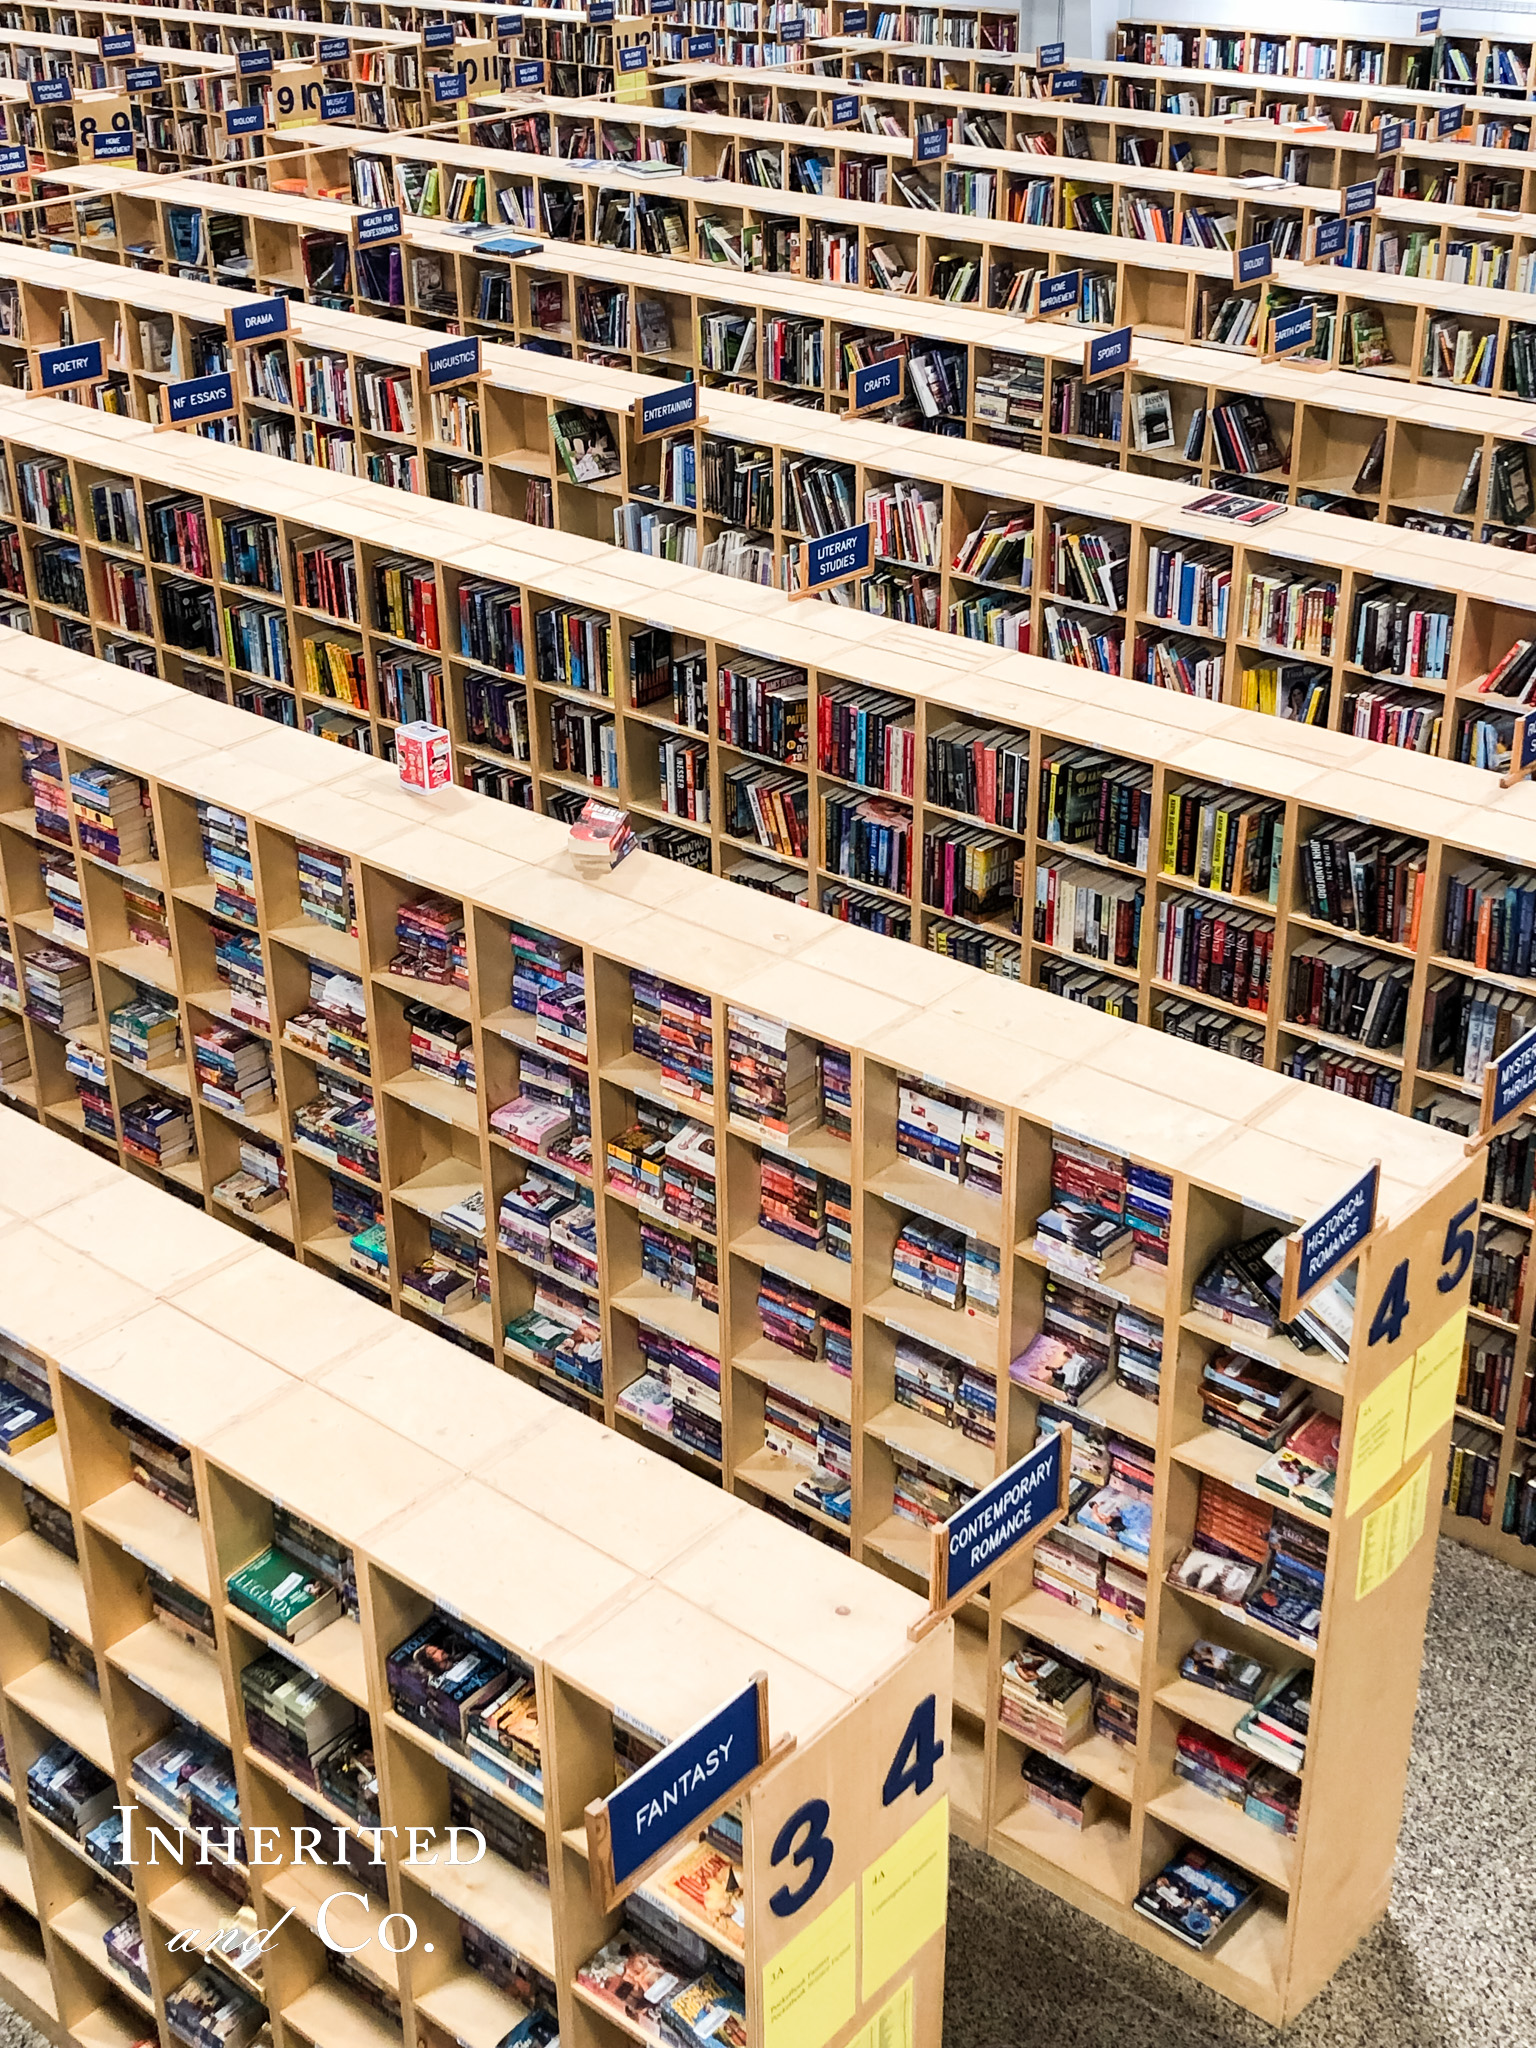 McKay's Nashville bookshelves from above